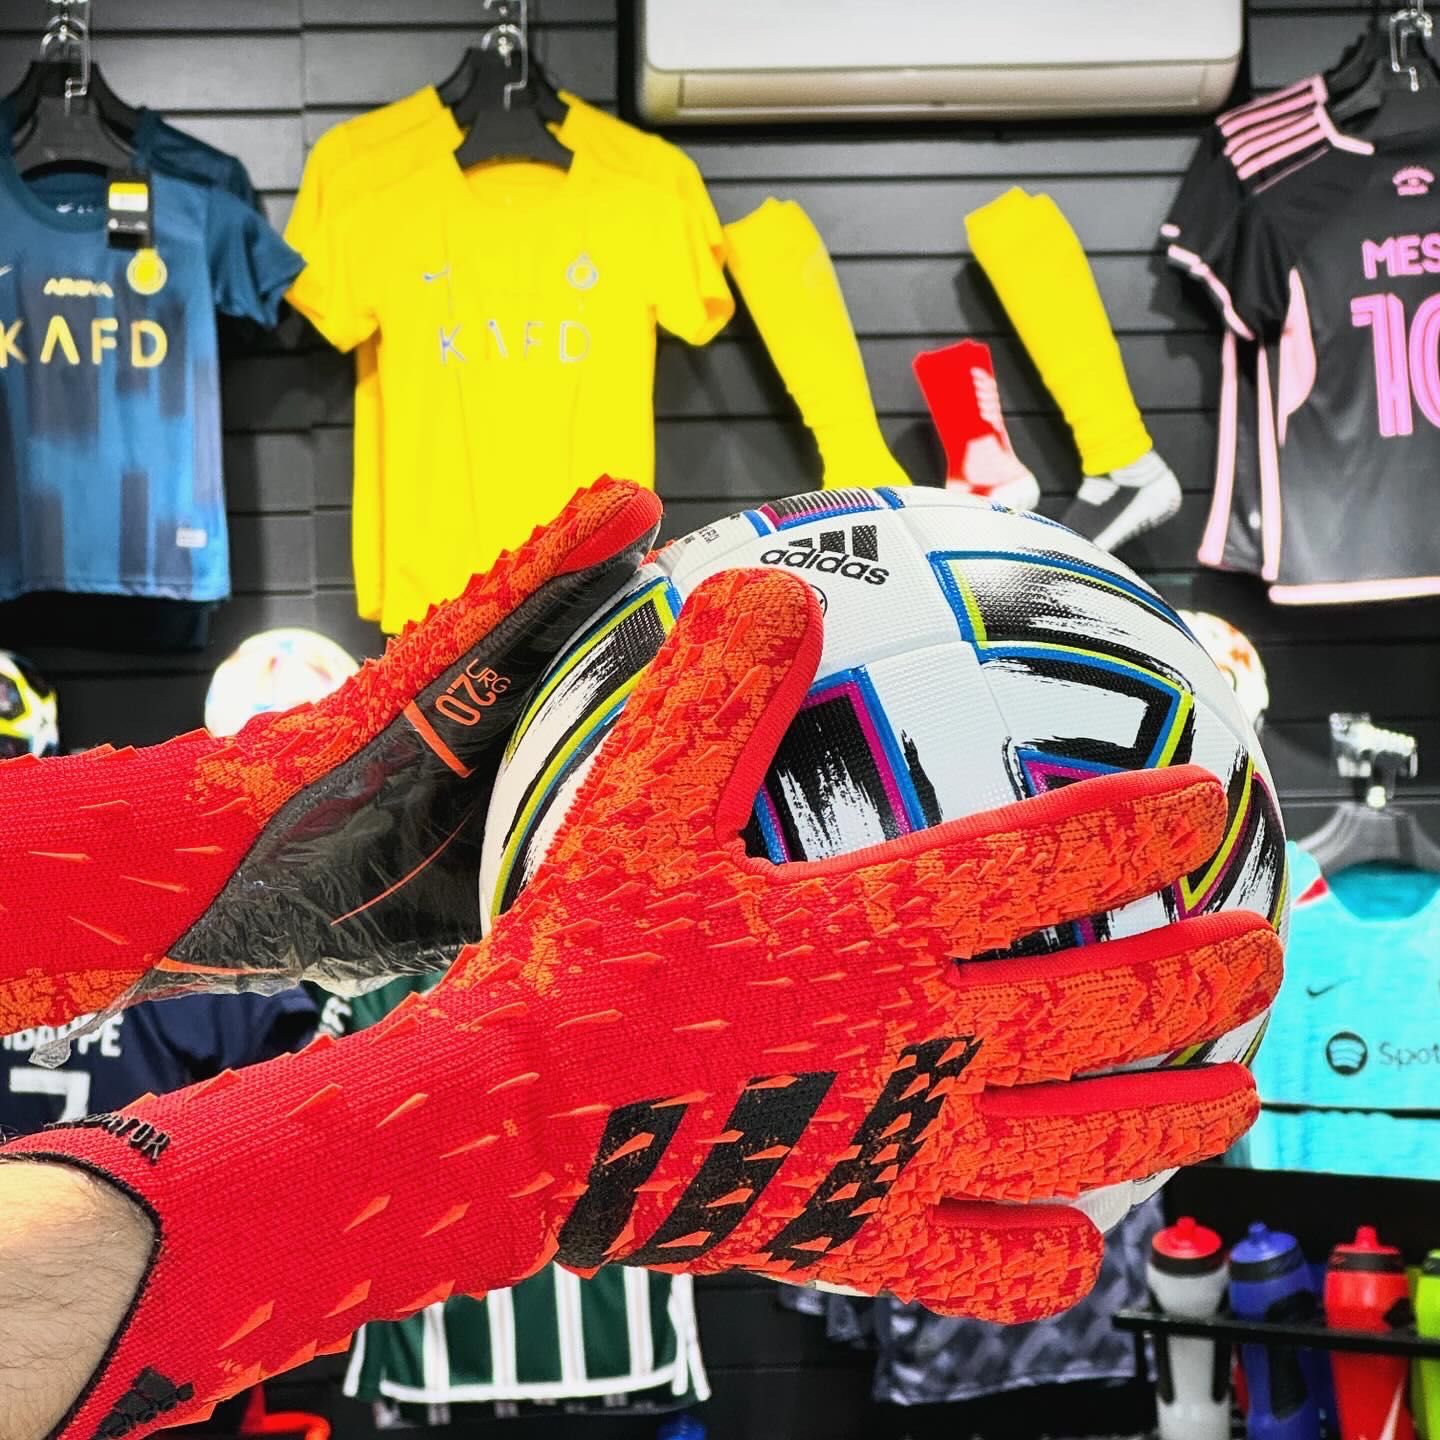 Вратарские перчатки Adidas Predator бюджетный вариант, красный/синий